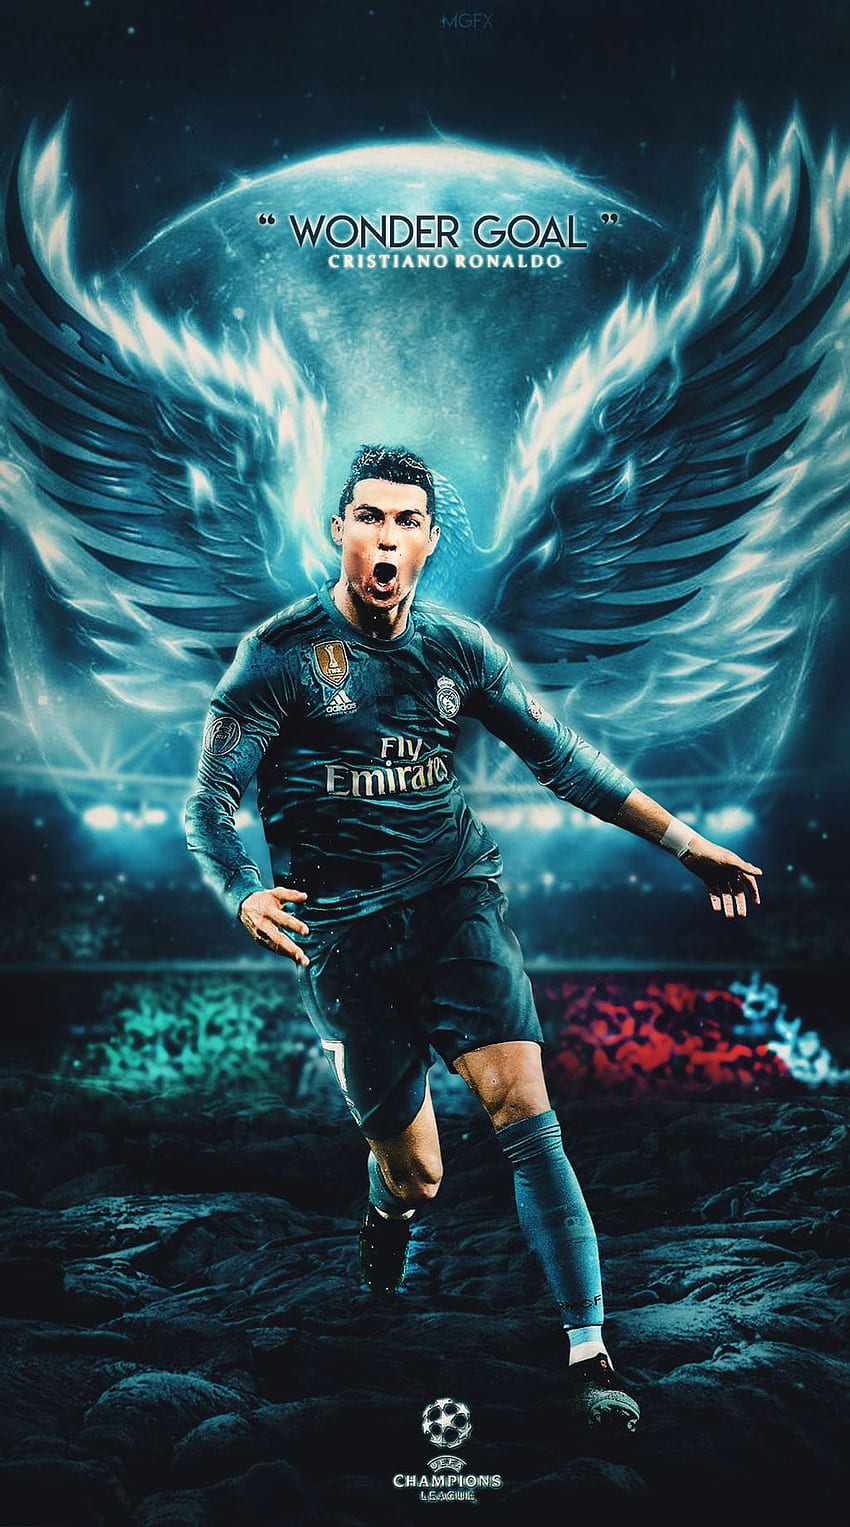 Sự nổi tiếng và tài năng của Cristiano Ronaldo đã trở thành một biểu tượng trên toàn cầu. Hãy trang trí cho iPhone của bạn những hình ảnh đầy cảm hứng về cầu thủ này để thể hiện lòng hâm mộ của bạn.